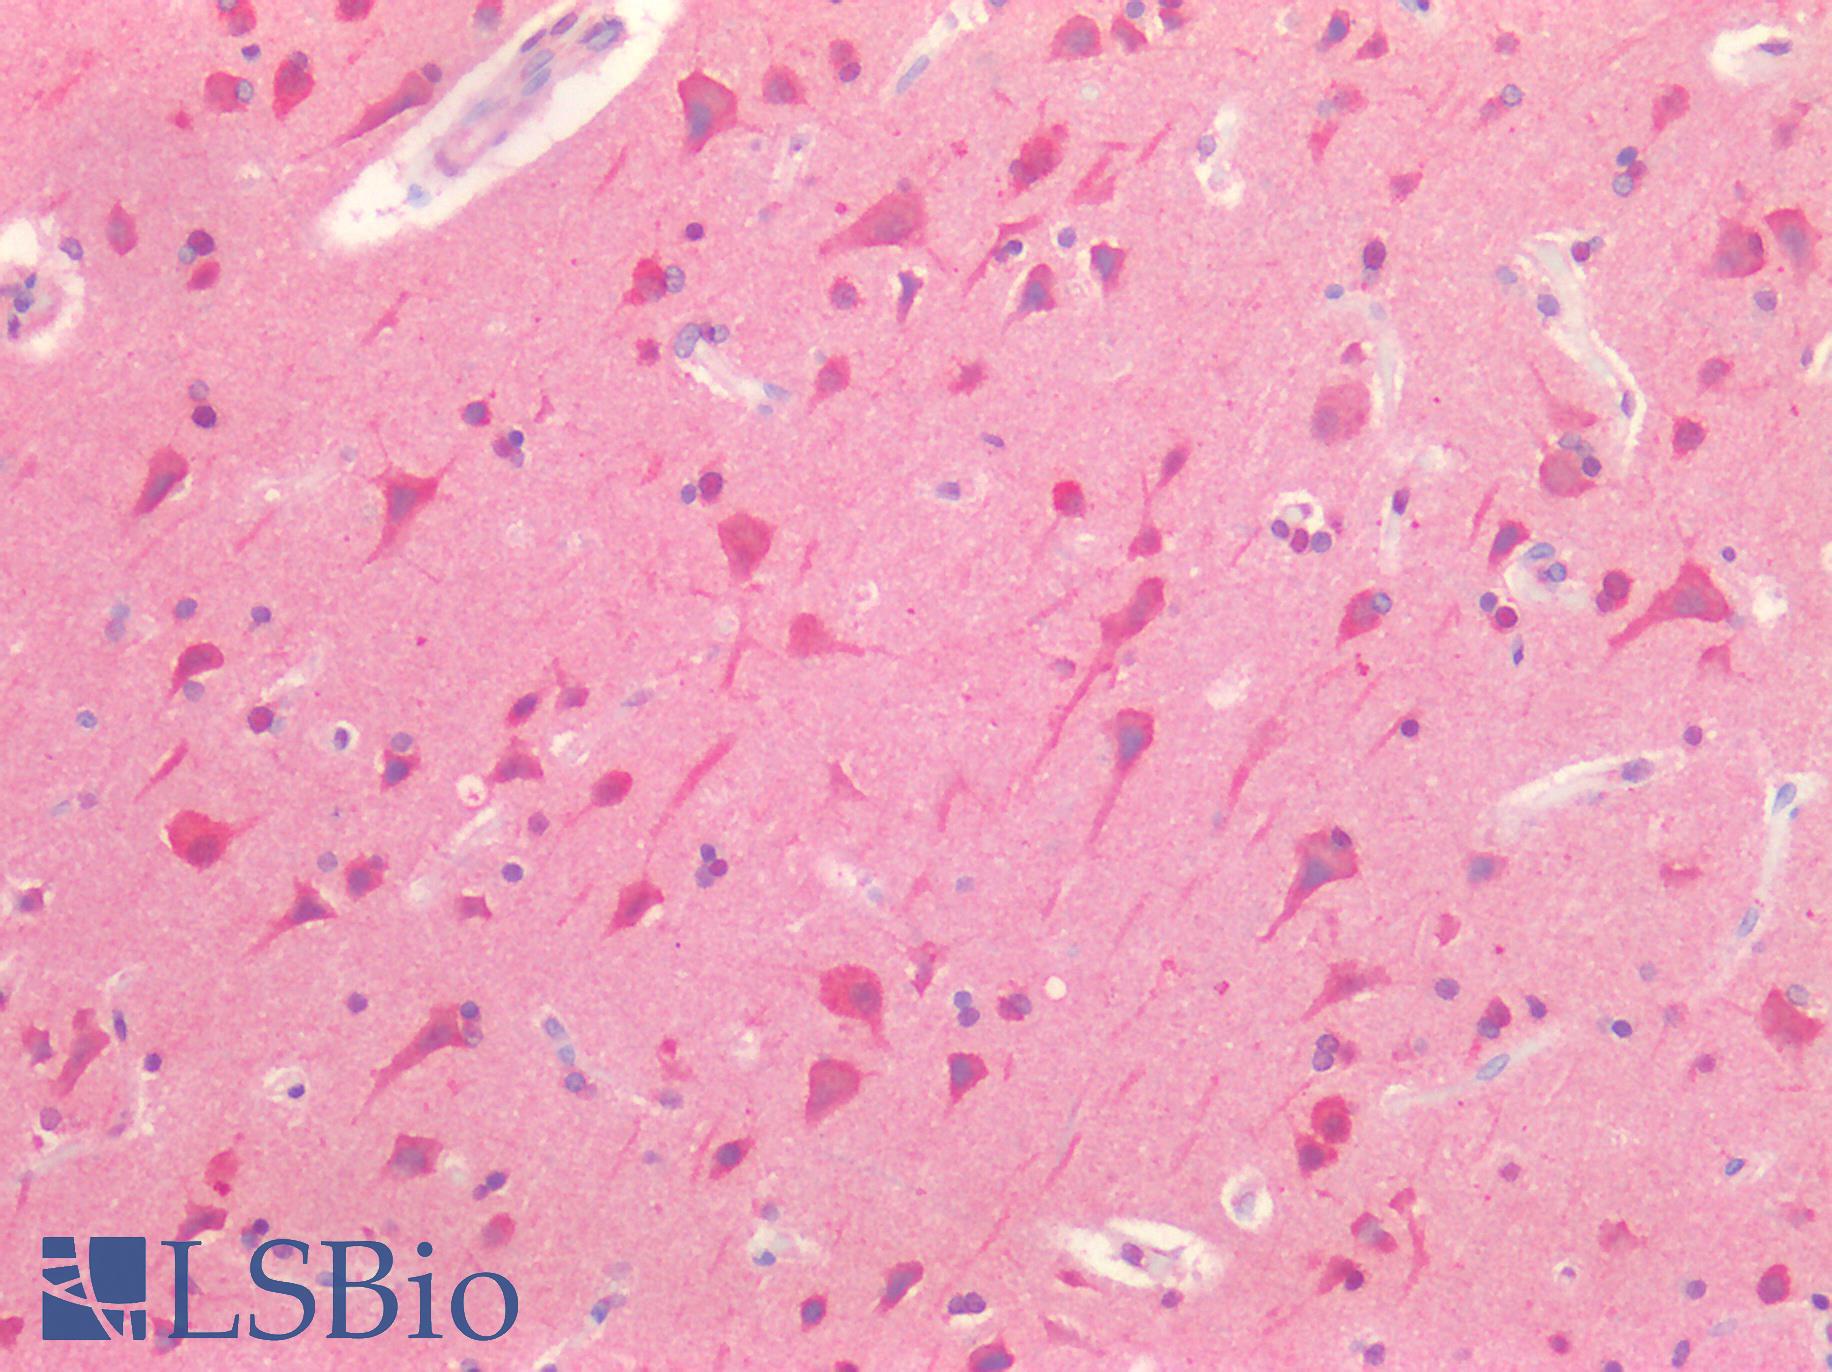 TH / Tyrosine Hydroxylase Antibody - Human Brain, Cortex: Formalin-Fixed, Paraffin-Embedded (FFPE)